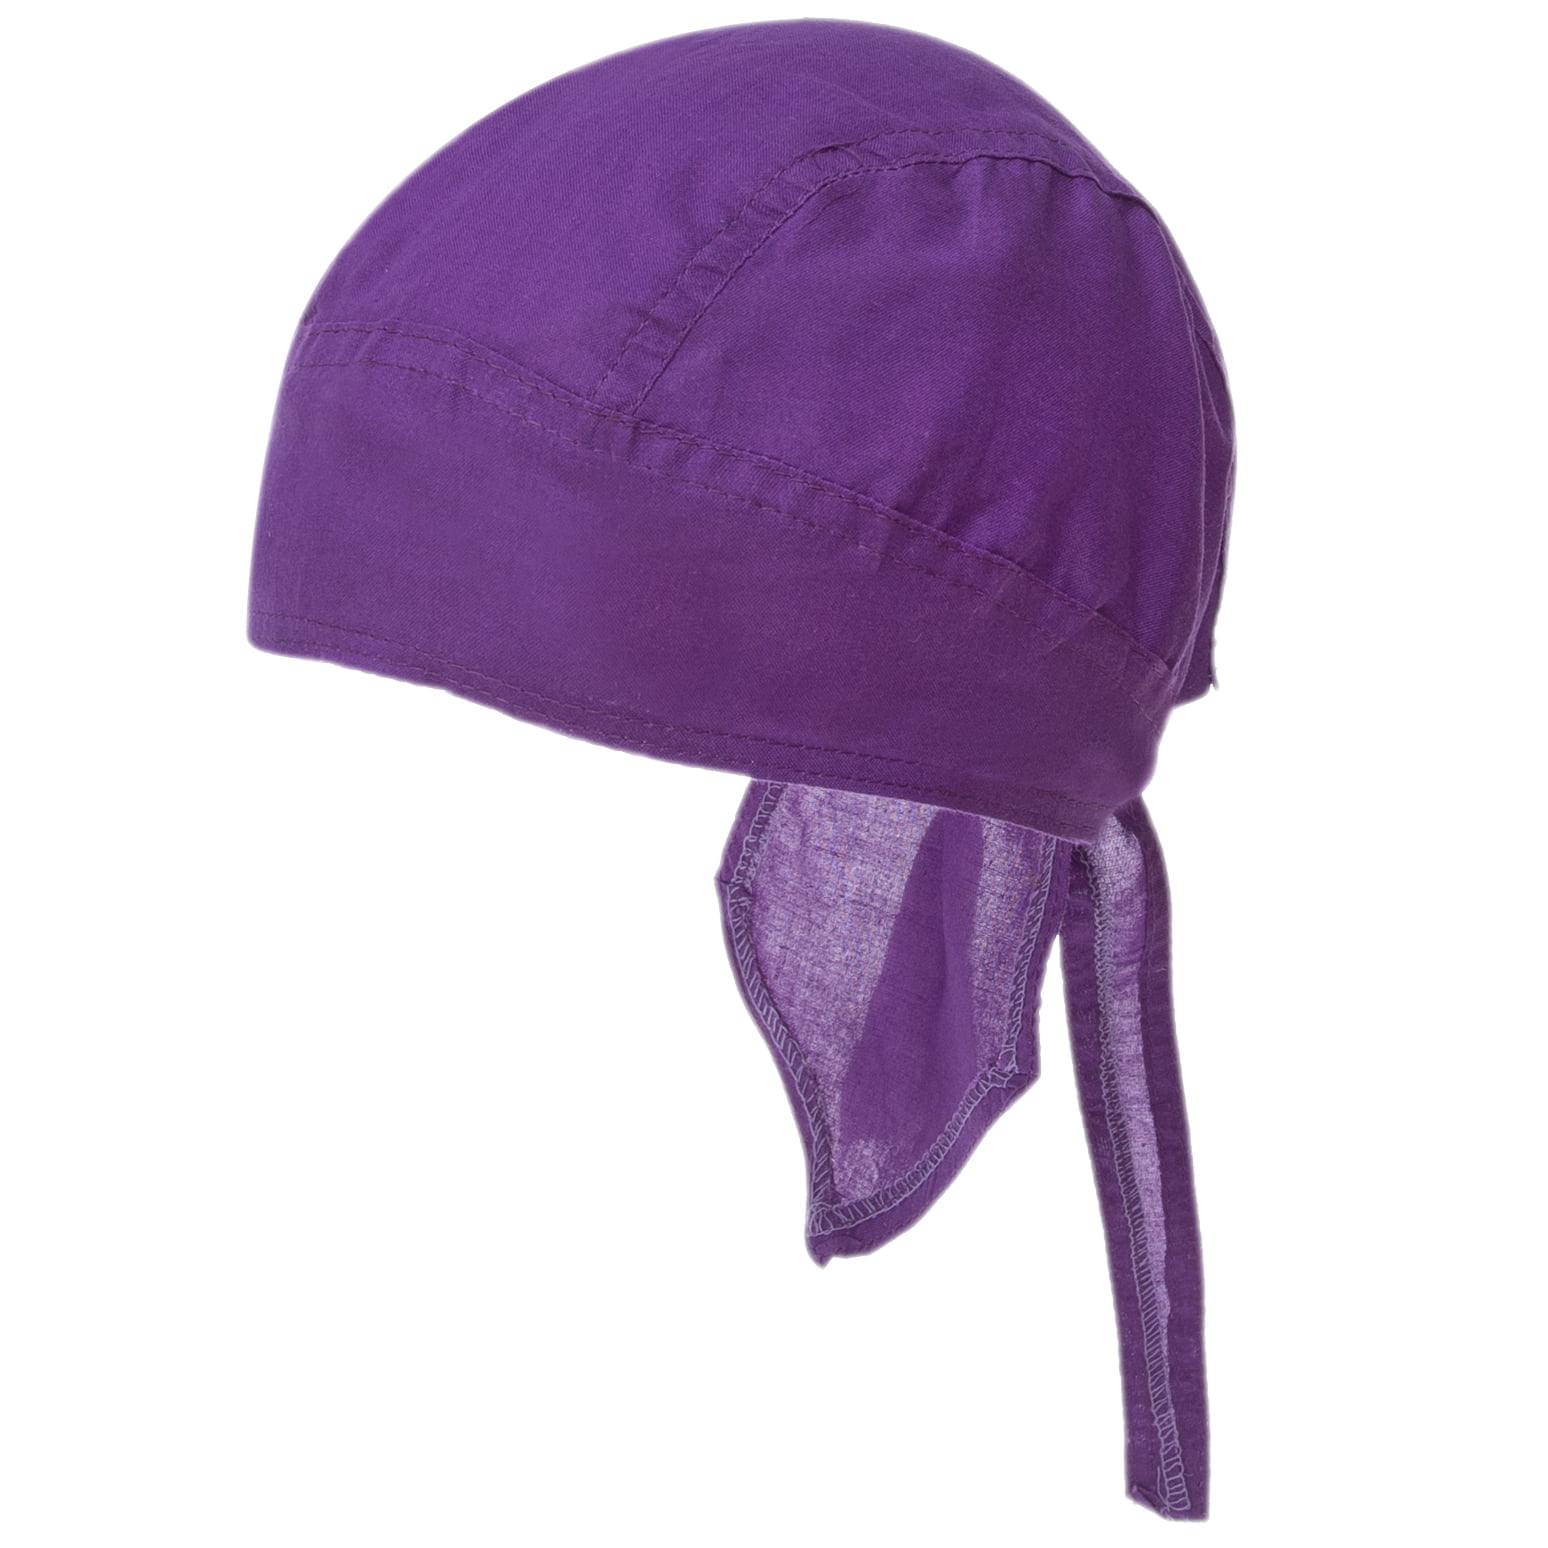 600pcs Grape / Purple Solid Color Head Wrap - 100% Cotton - Imported - Grape / Purple, 600pcs/Case